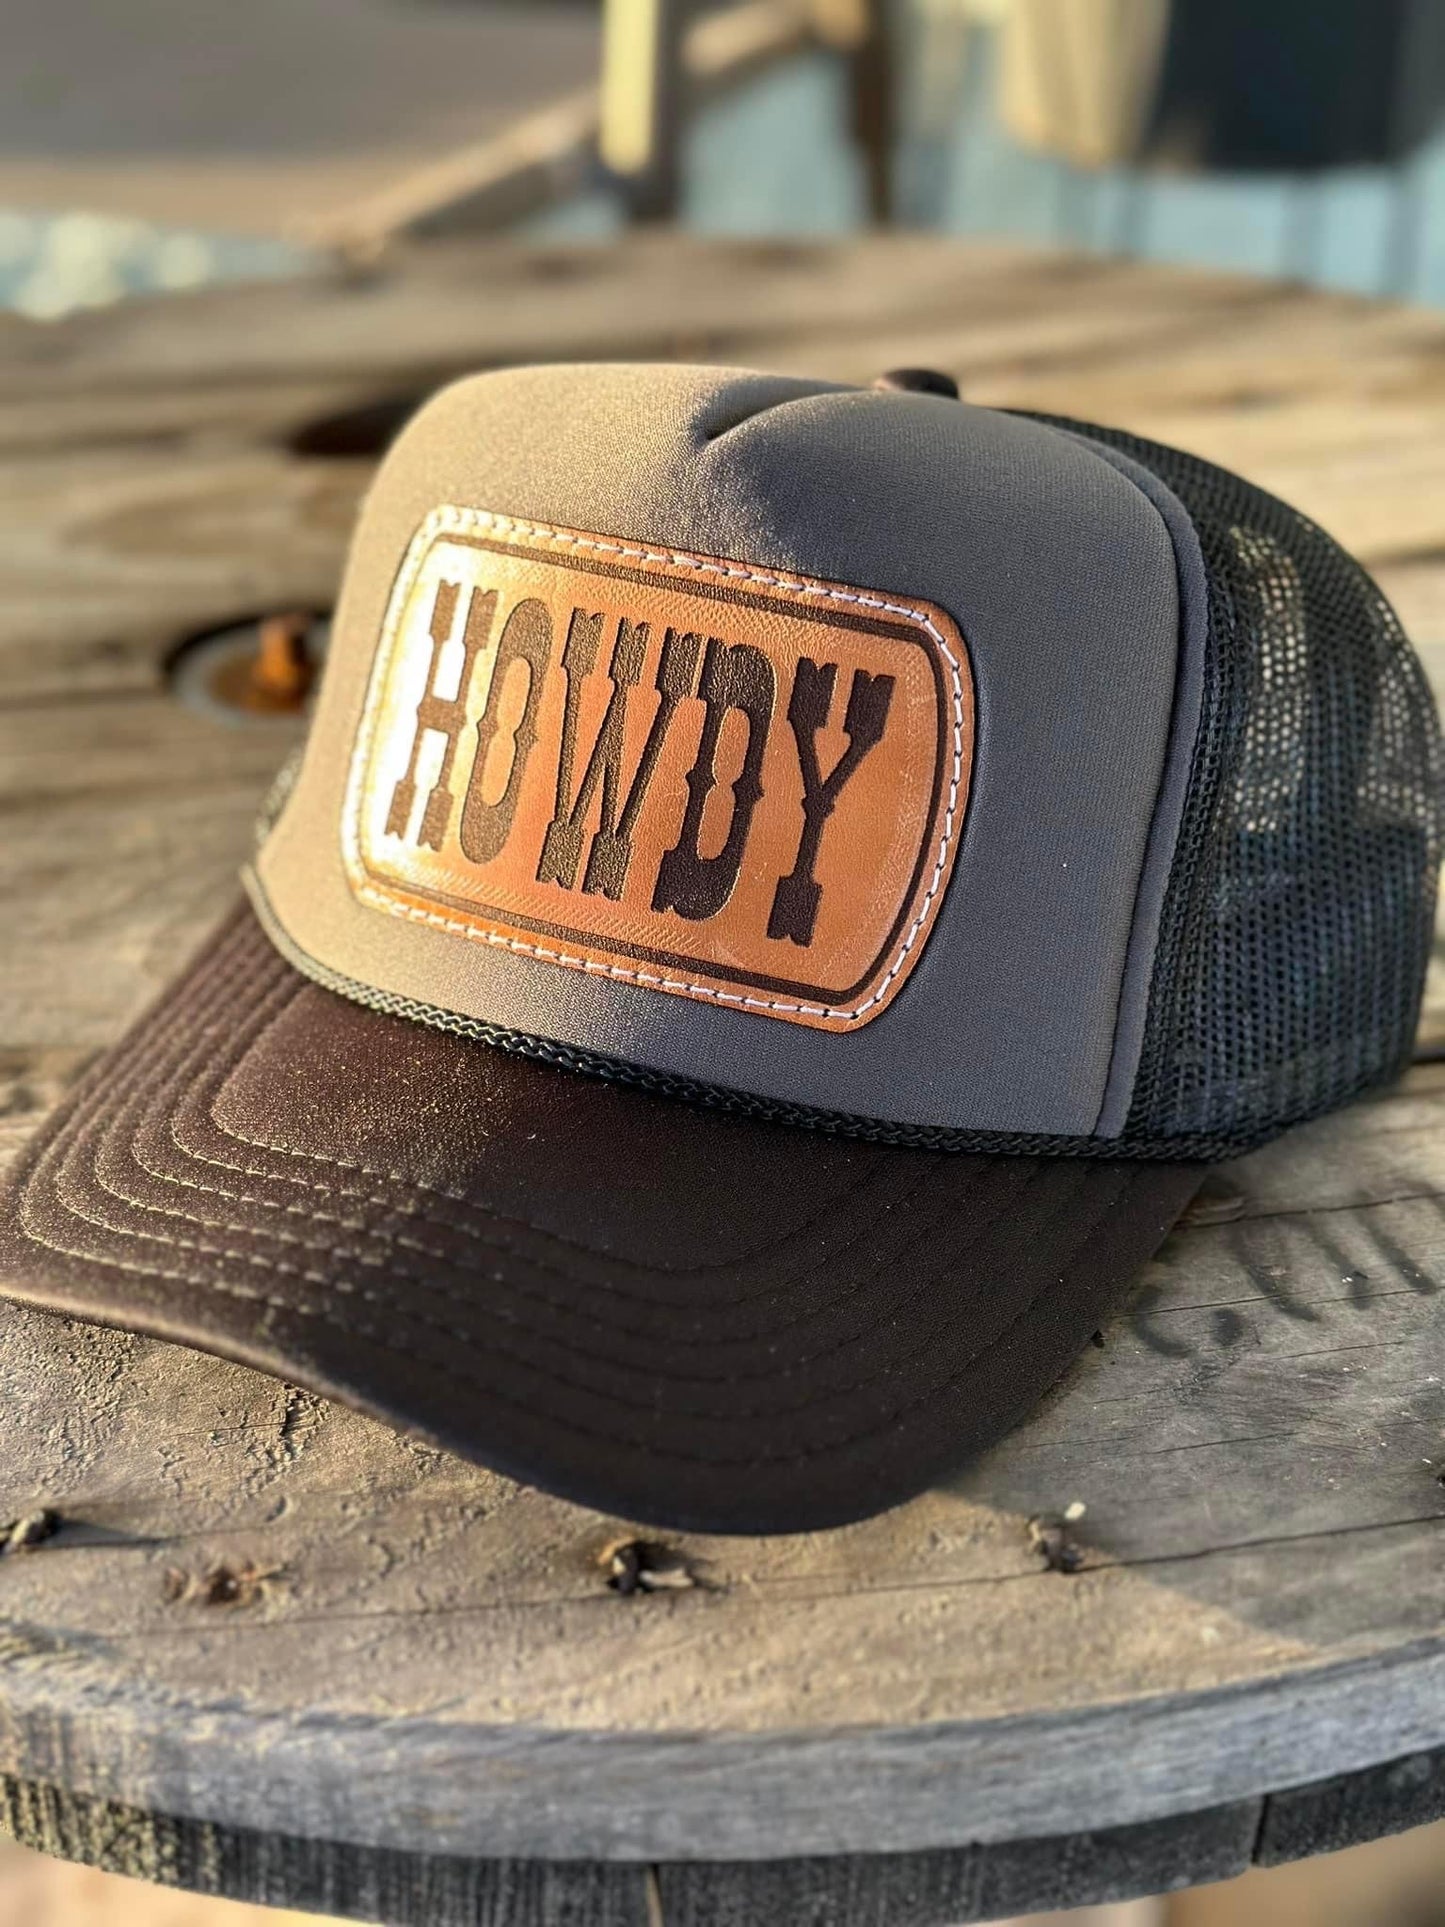 “Howdy” foam trucker hat